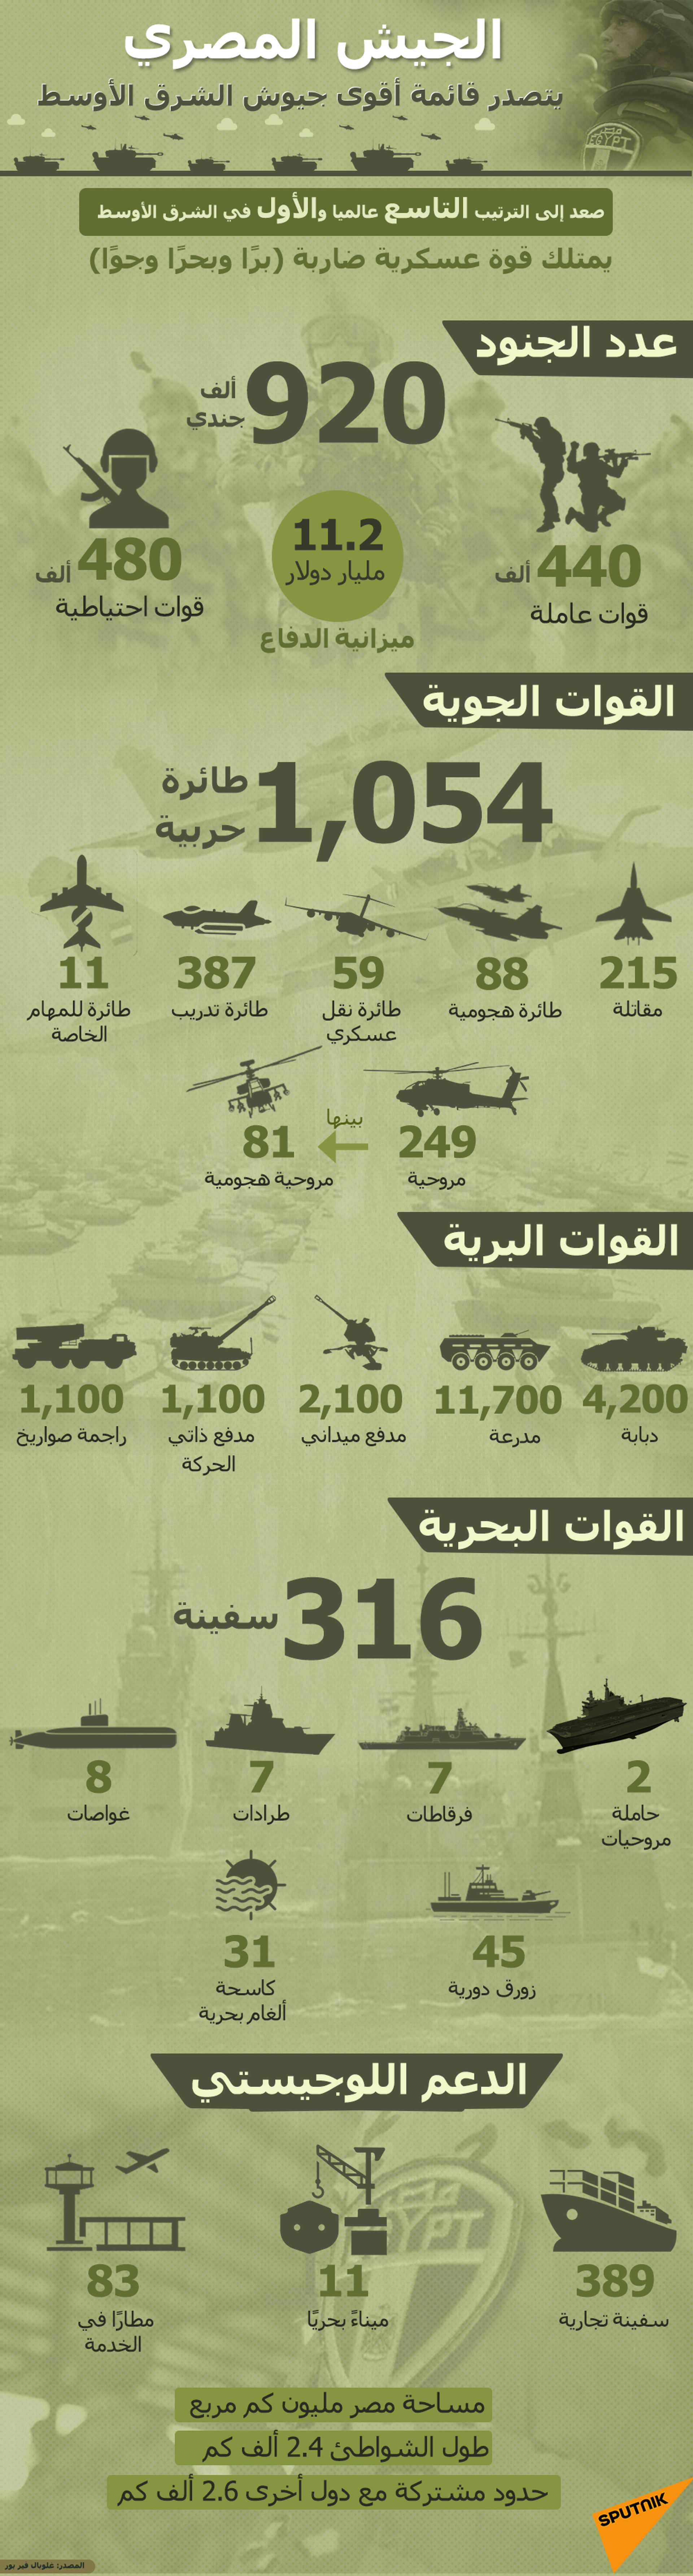 الجيش المصري يتصدر قائمة أقوى جيوش الشرق الأوسط - سبوتنيك عربي, 1920, 19.01.2022